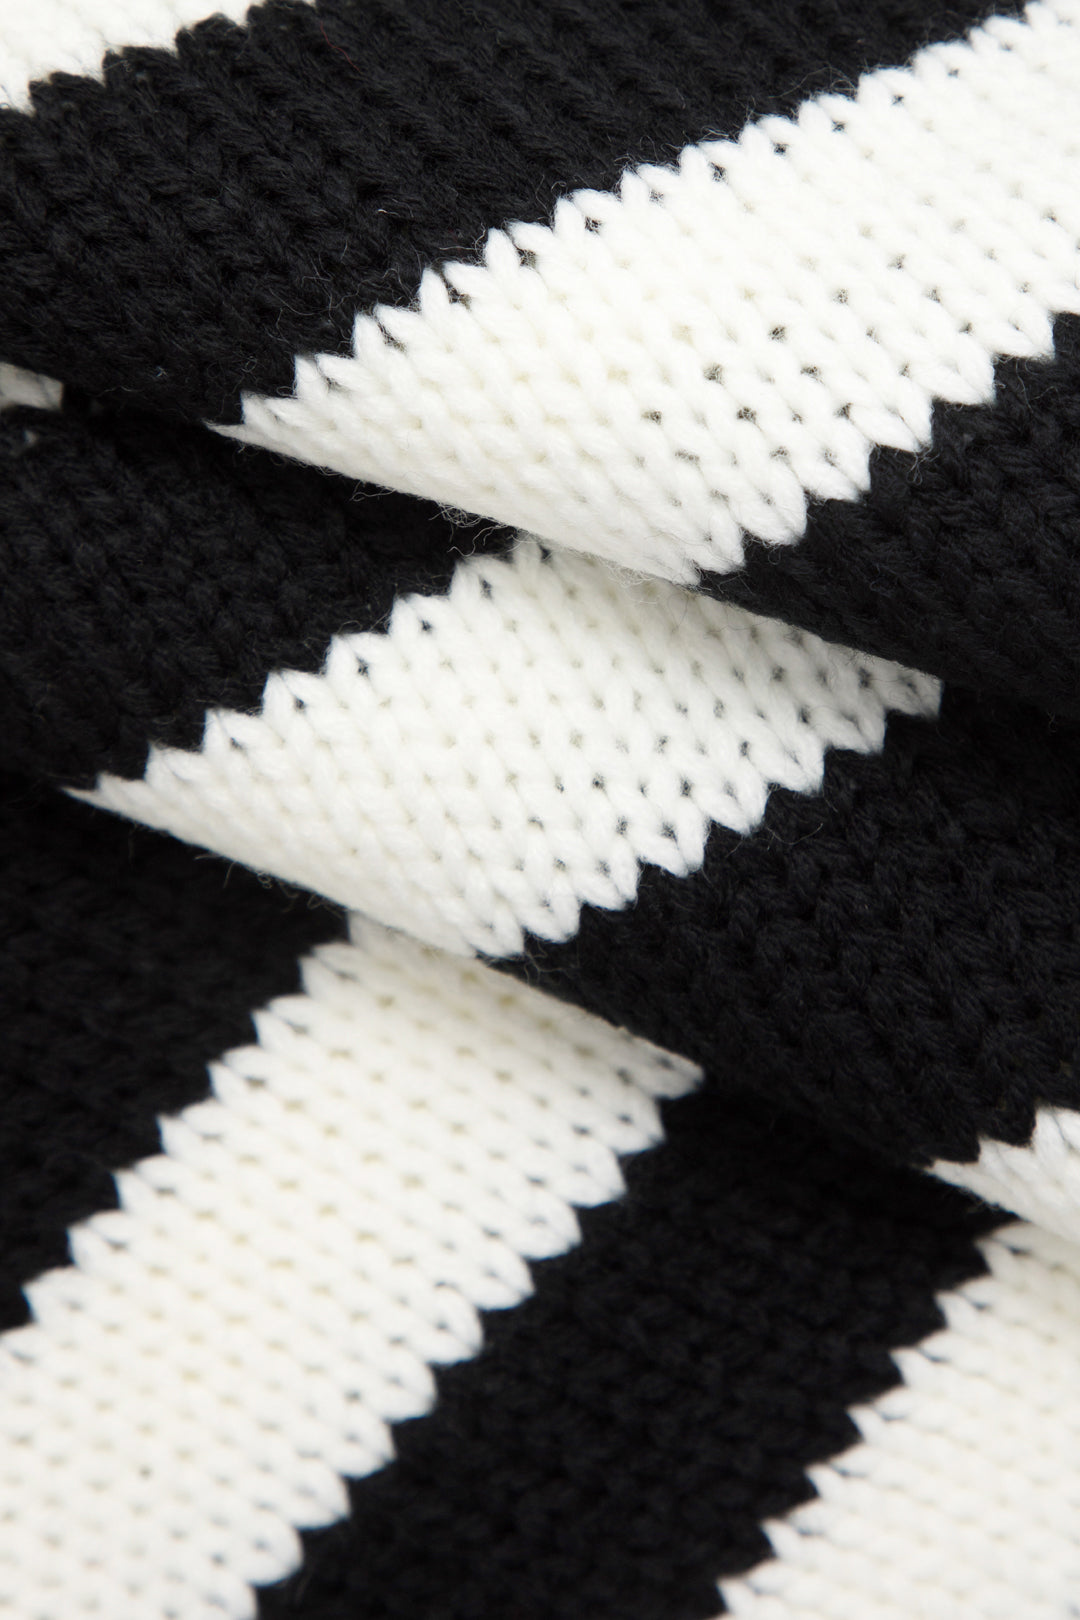 Stripe Knit Long Sleeve Crop Top